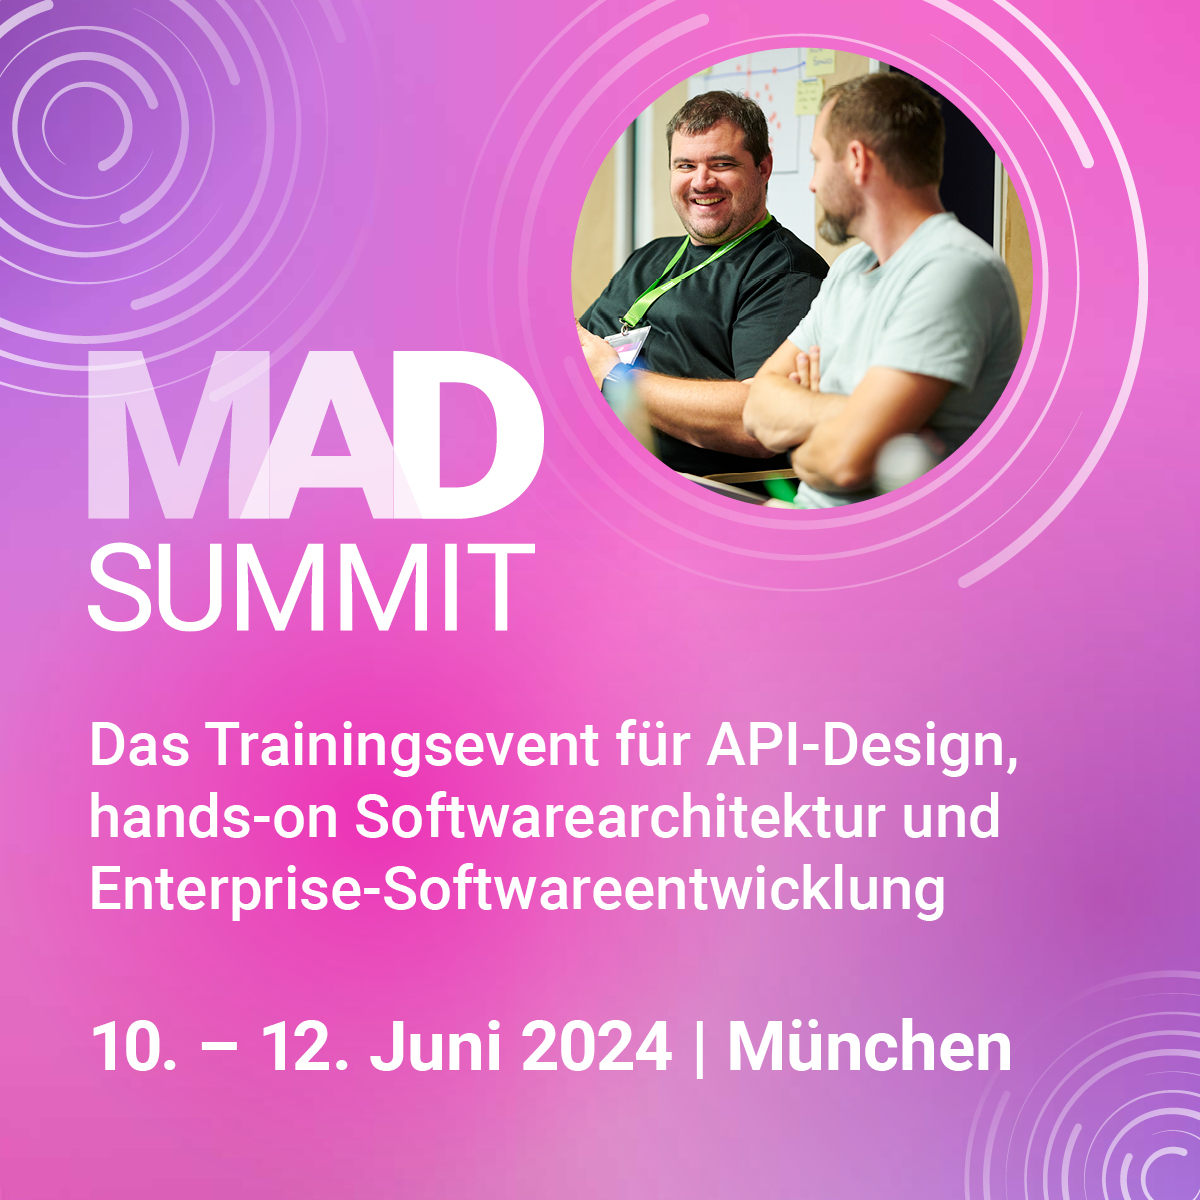 MAD Summit 2024 -Das Trainingsevent für API-Design, hands-on Software-Architektur und Enterprise-Softwareentwicklung